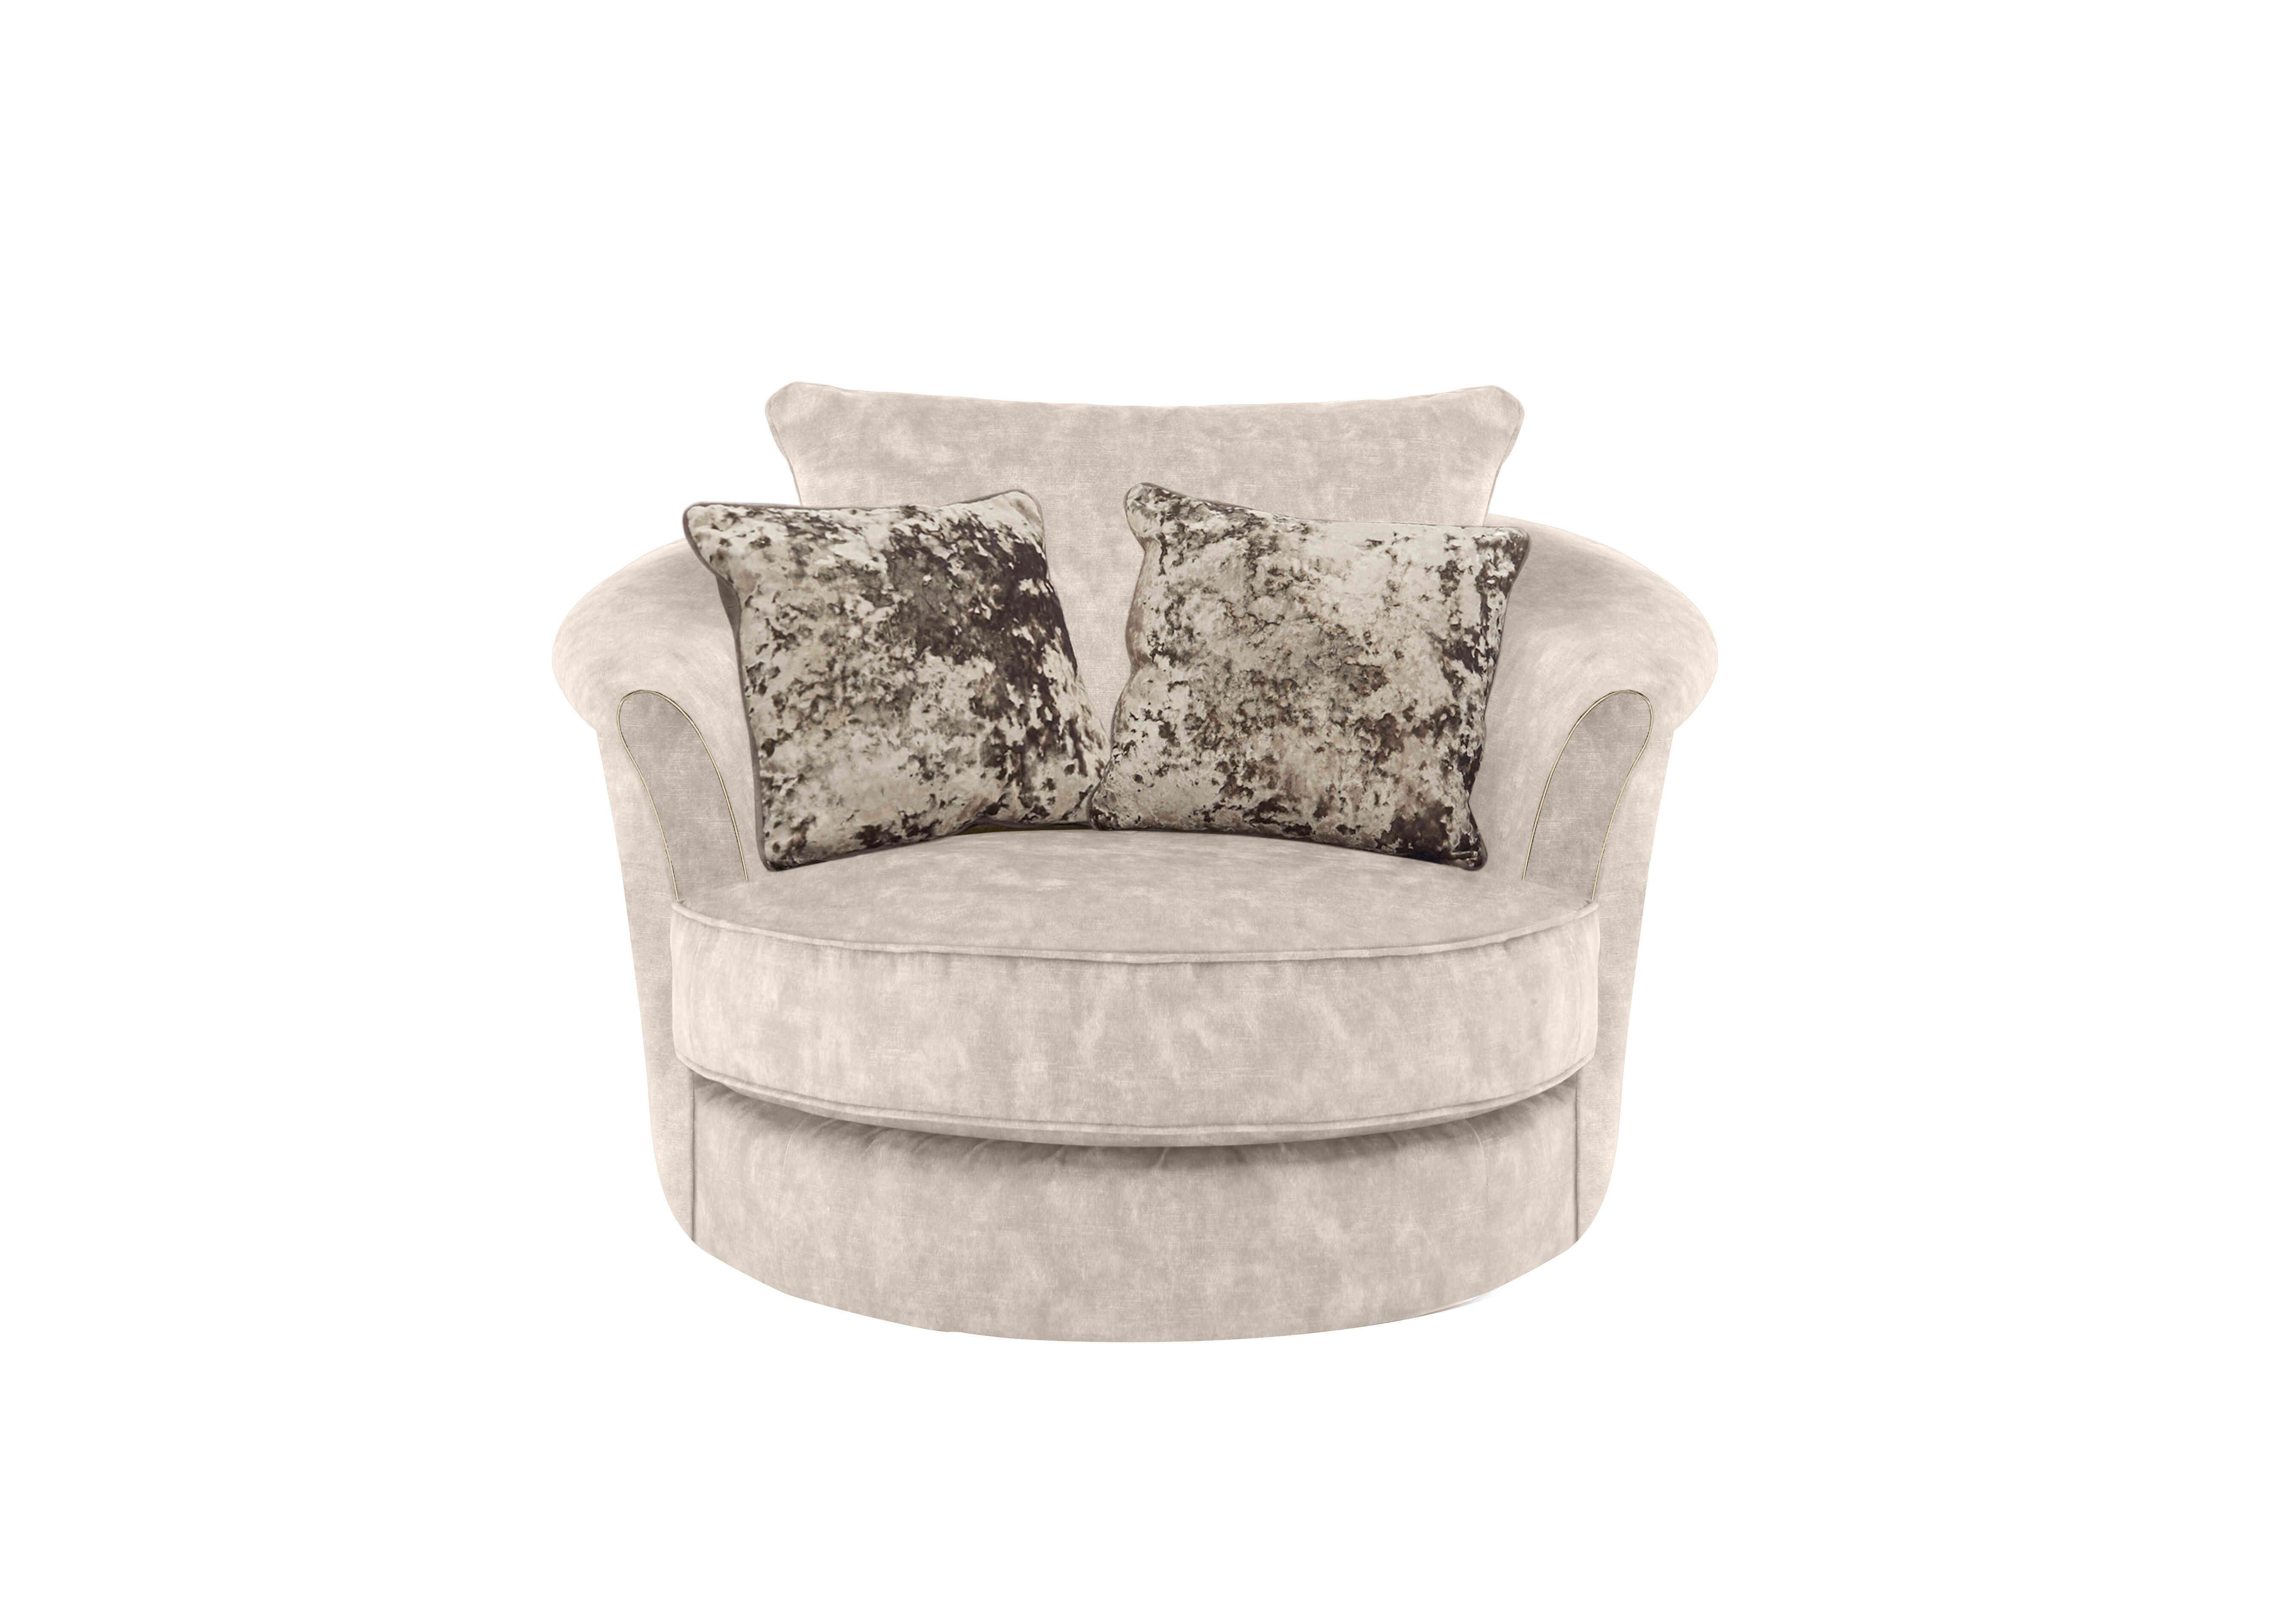 Ariana Twister Snuggler Chair in Dapple Cream Brass Insert on Furniture Village